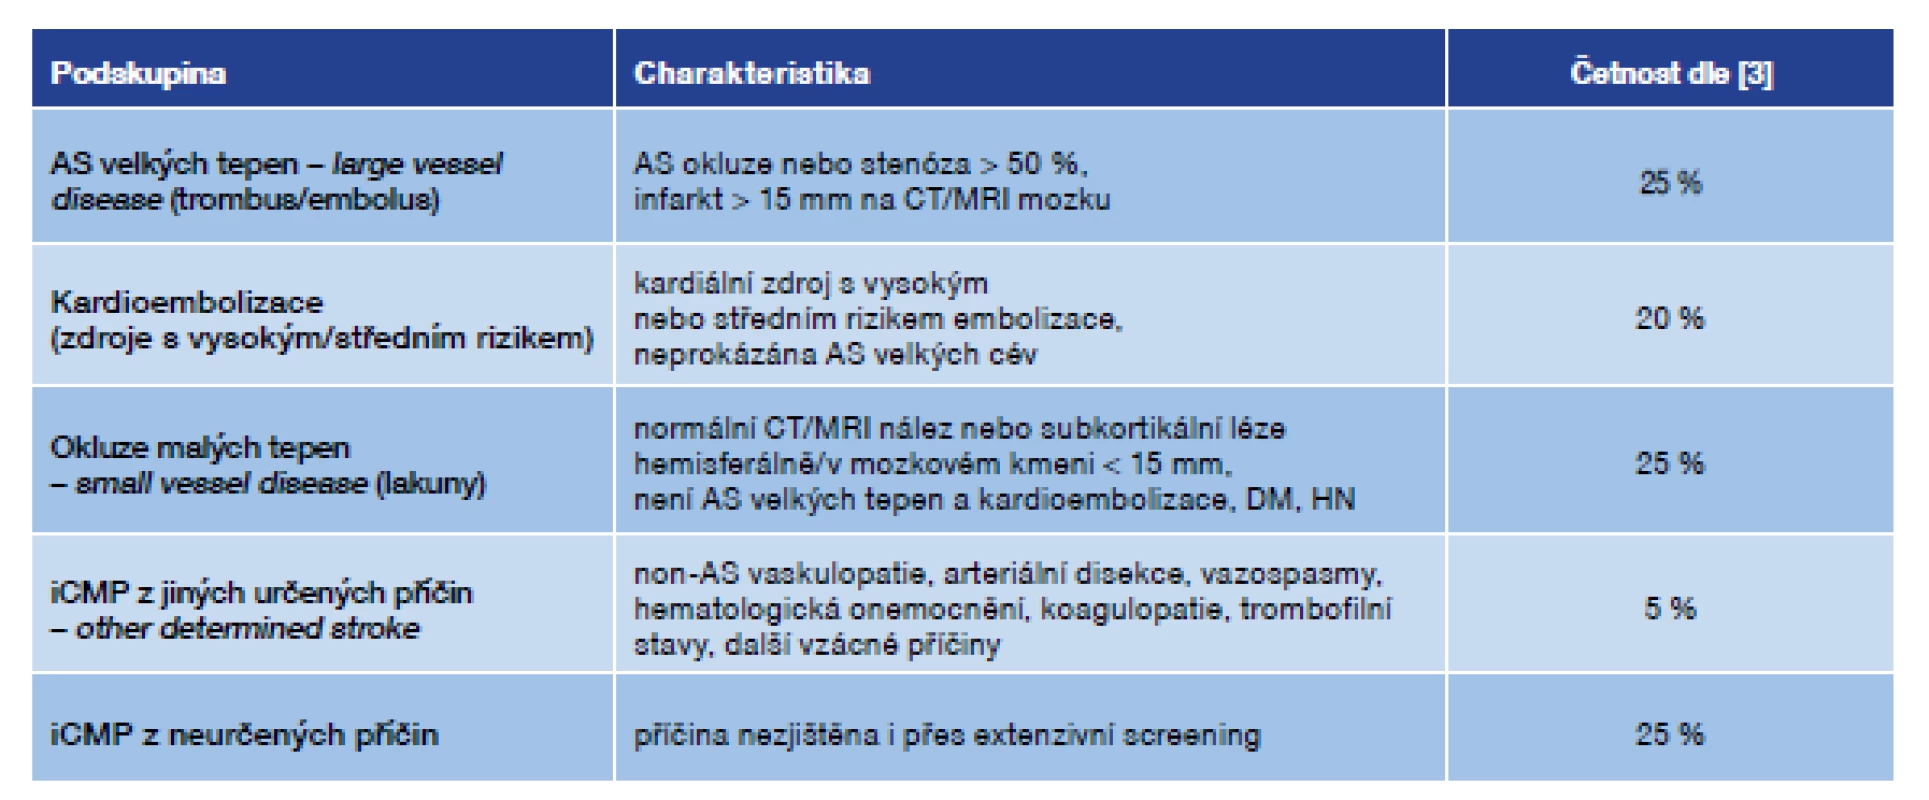 TOAST <i>(Trial 10172 in Acute Stroke Treatment)</i> – klasifikace příčin ischemické CMP [1] s četností jednotlivých příčin dle [3]